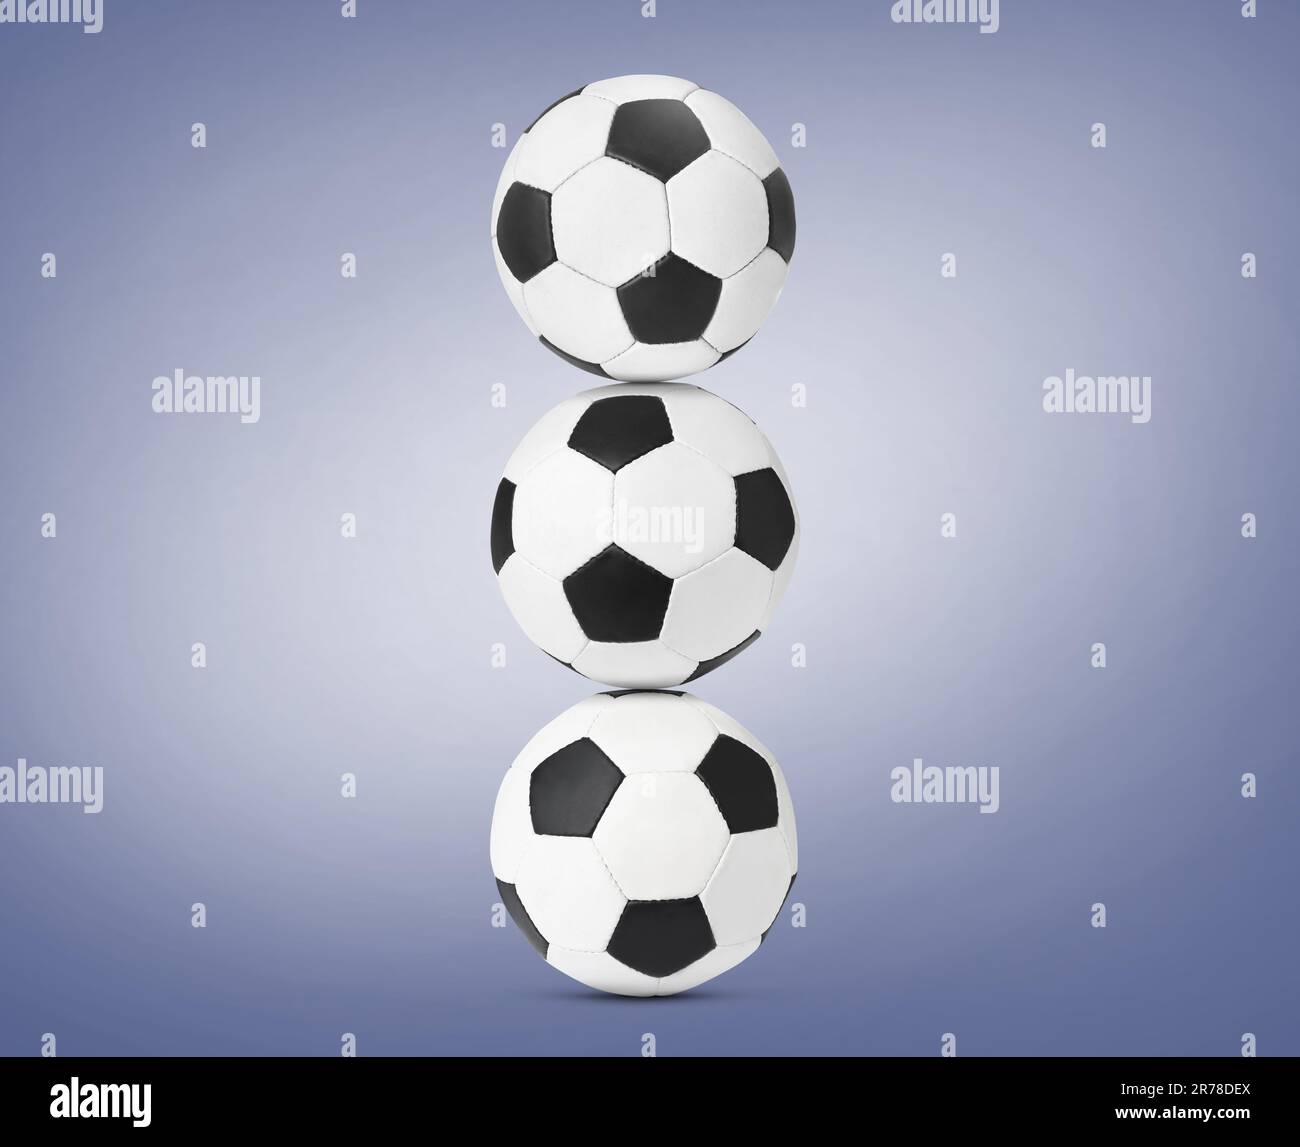 Pile de ballons de football sur fond bleu pâle Banque D'Images